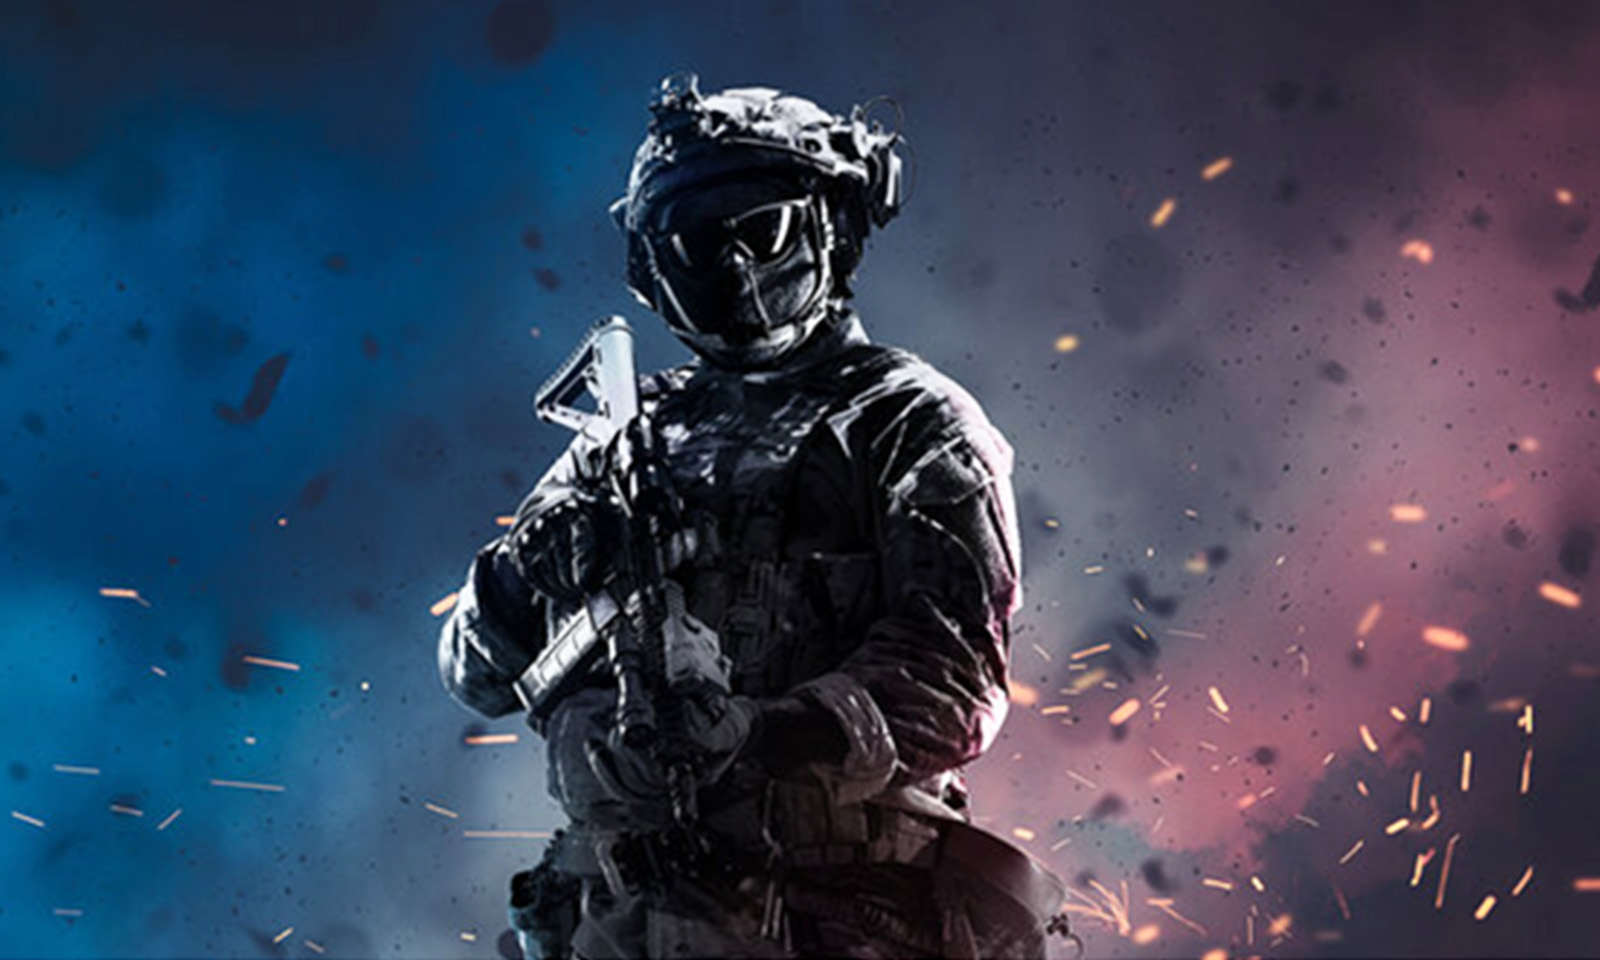 Personagem de Call of Duty para personalizar post.